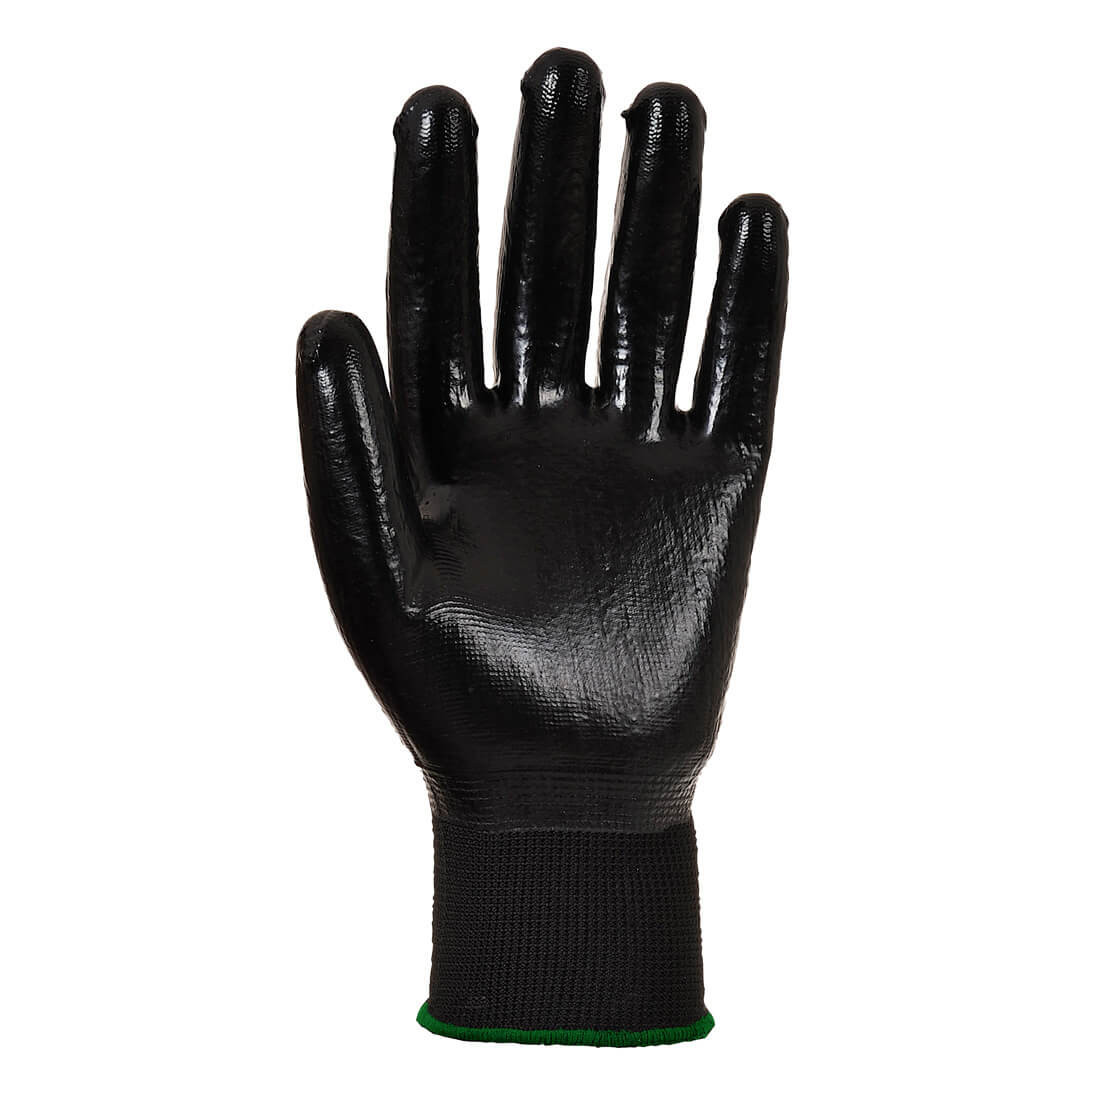 All Flex Grip-Handschuh - Arbeitschutz